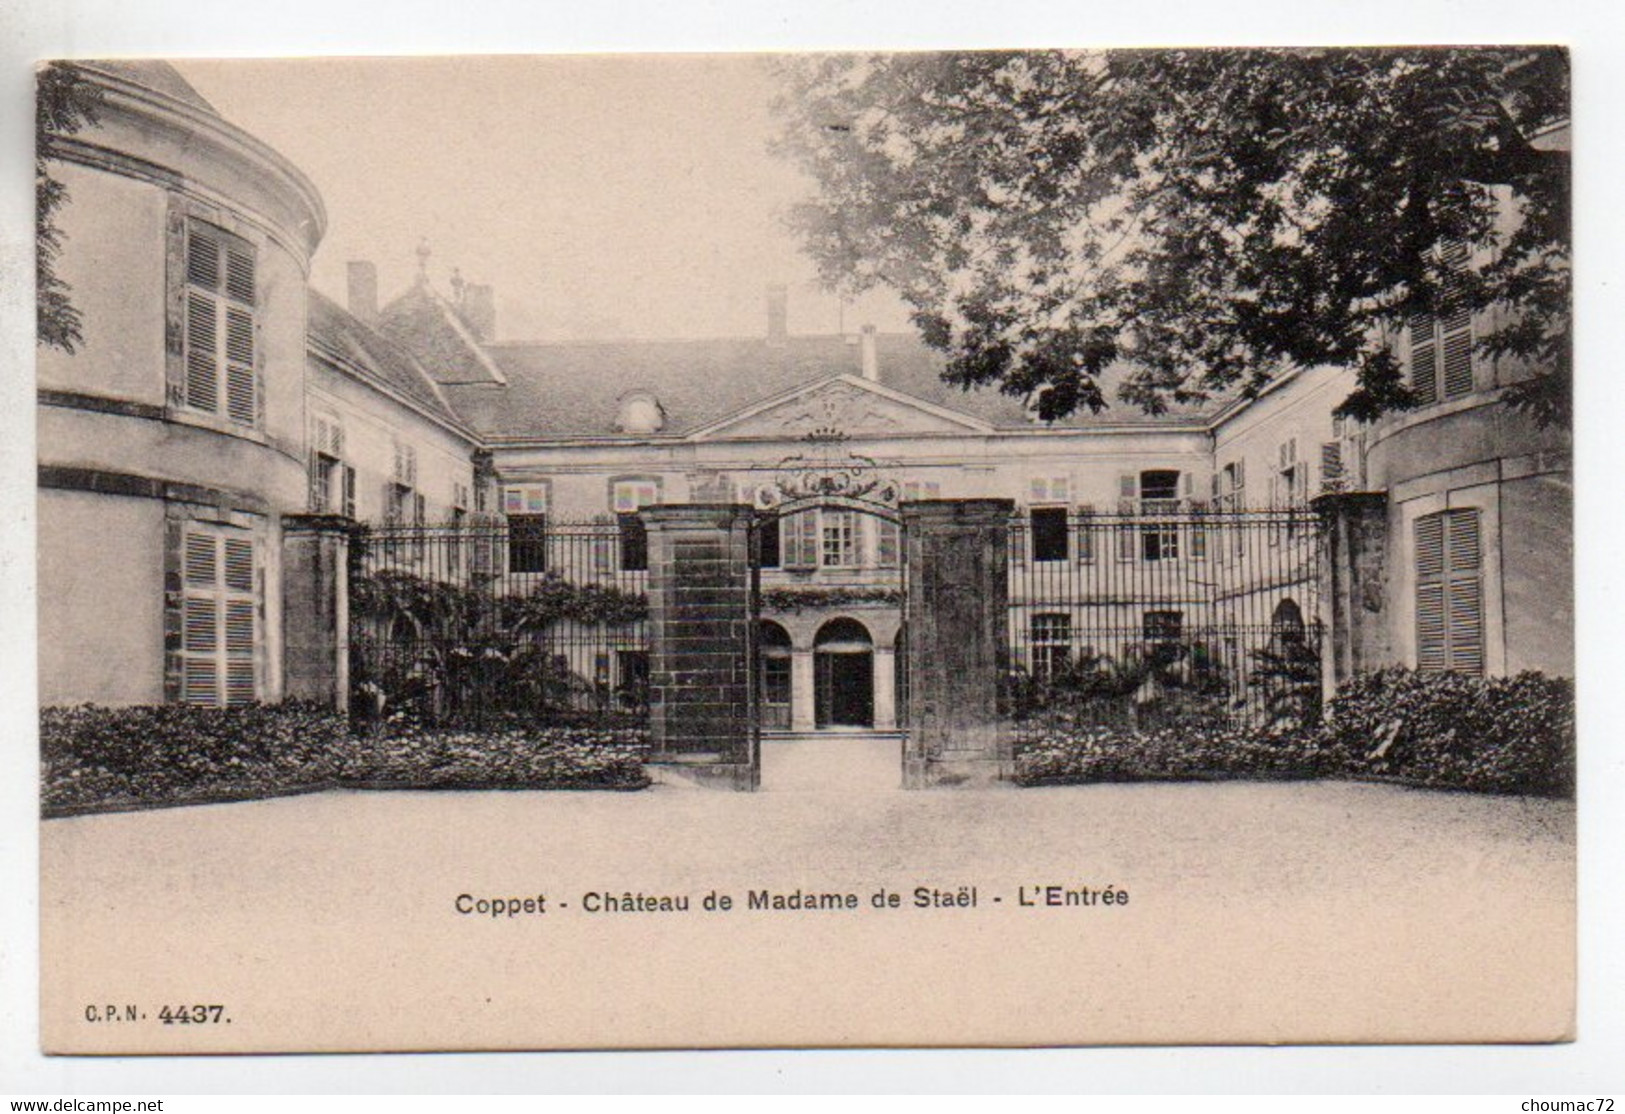 (Suisse) Vaud 158, Coppet, CPN 4437, Château De Madame Staël, L'entrée - Coppet